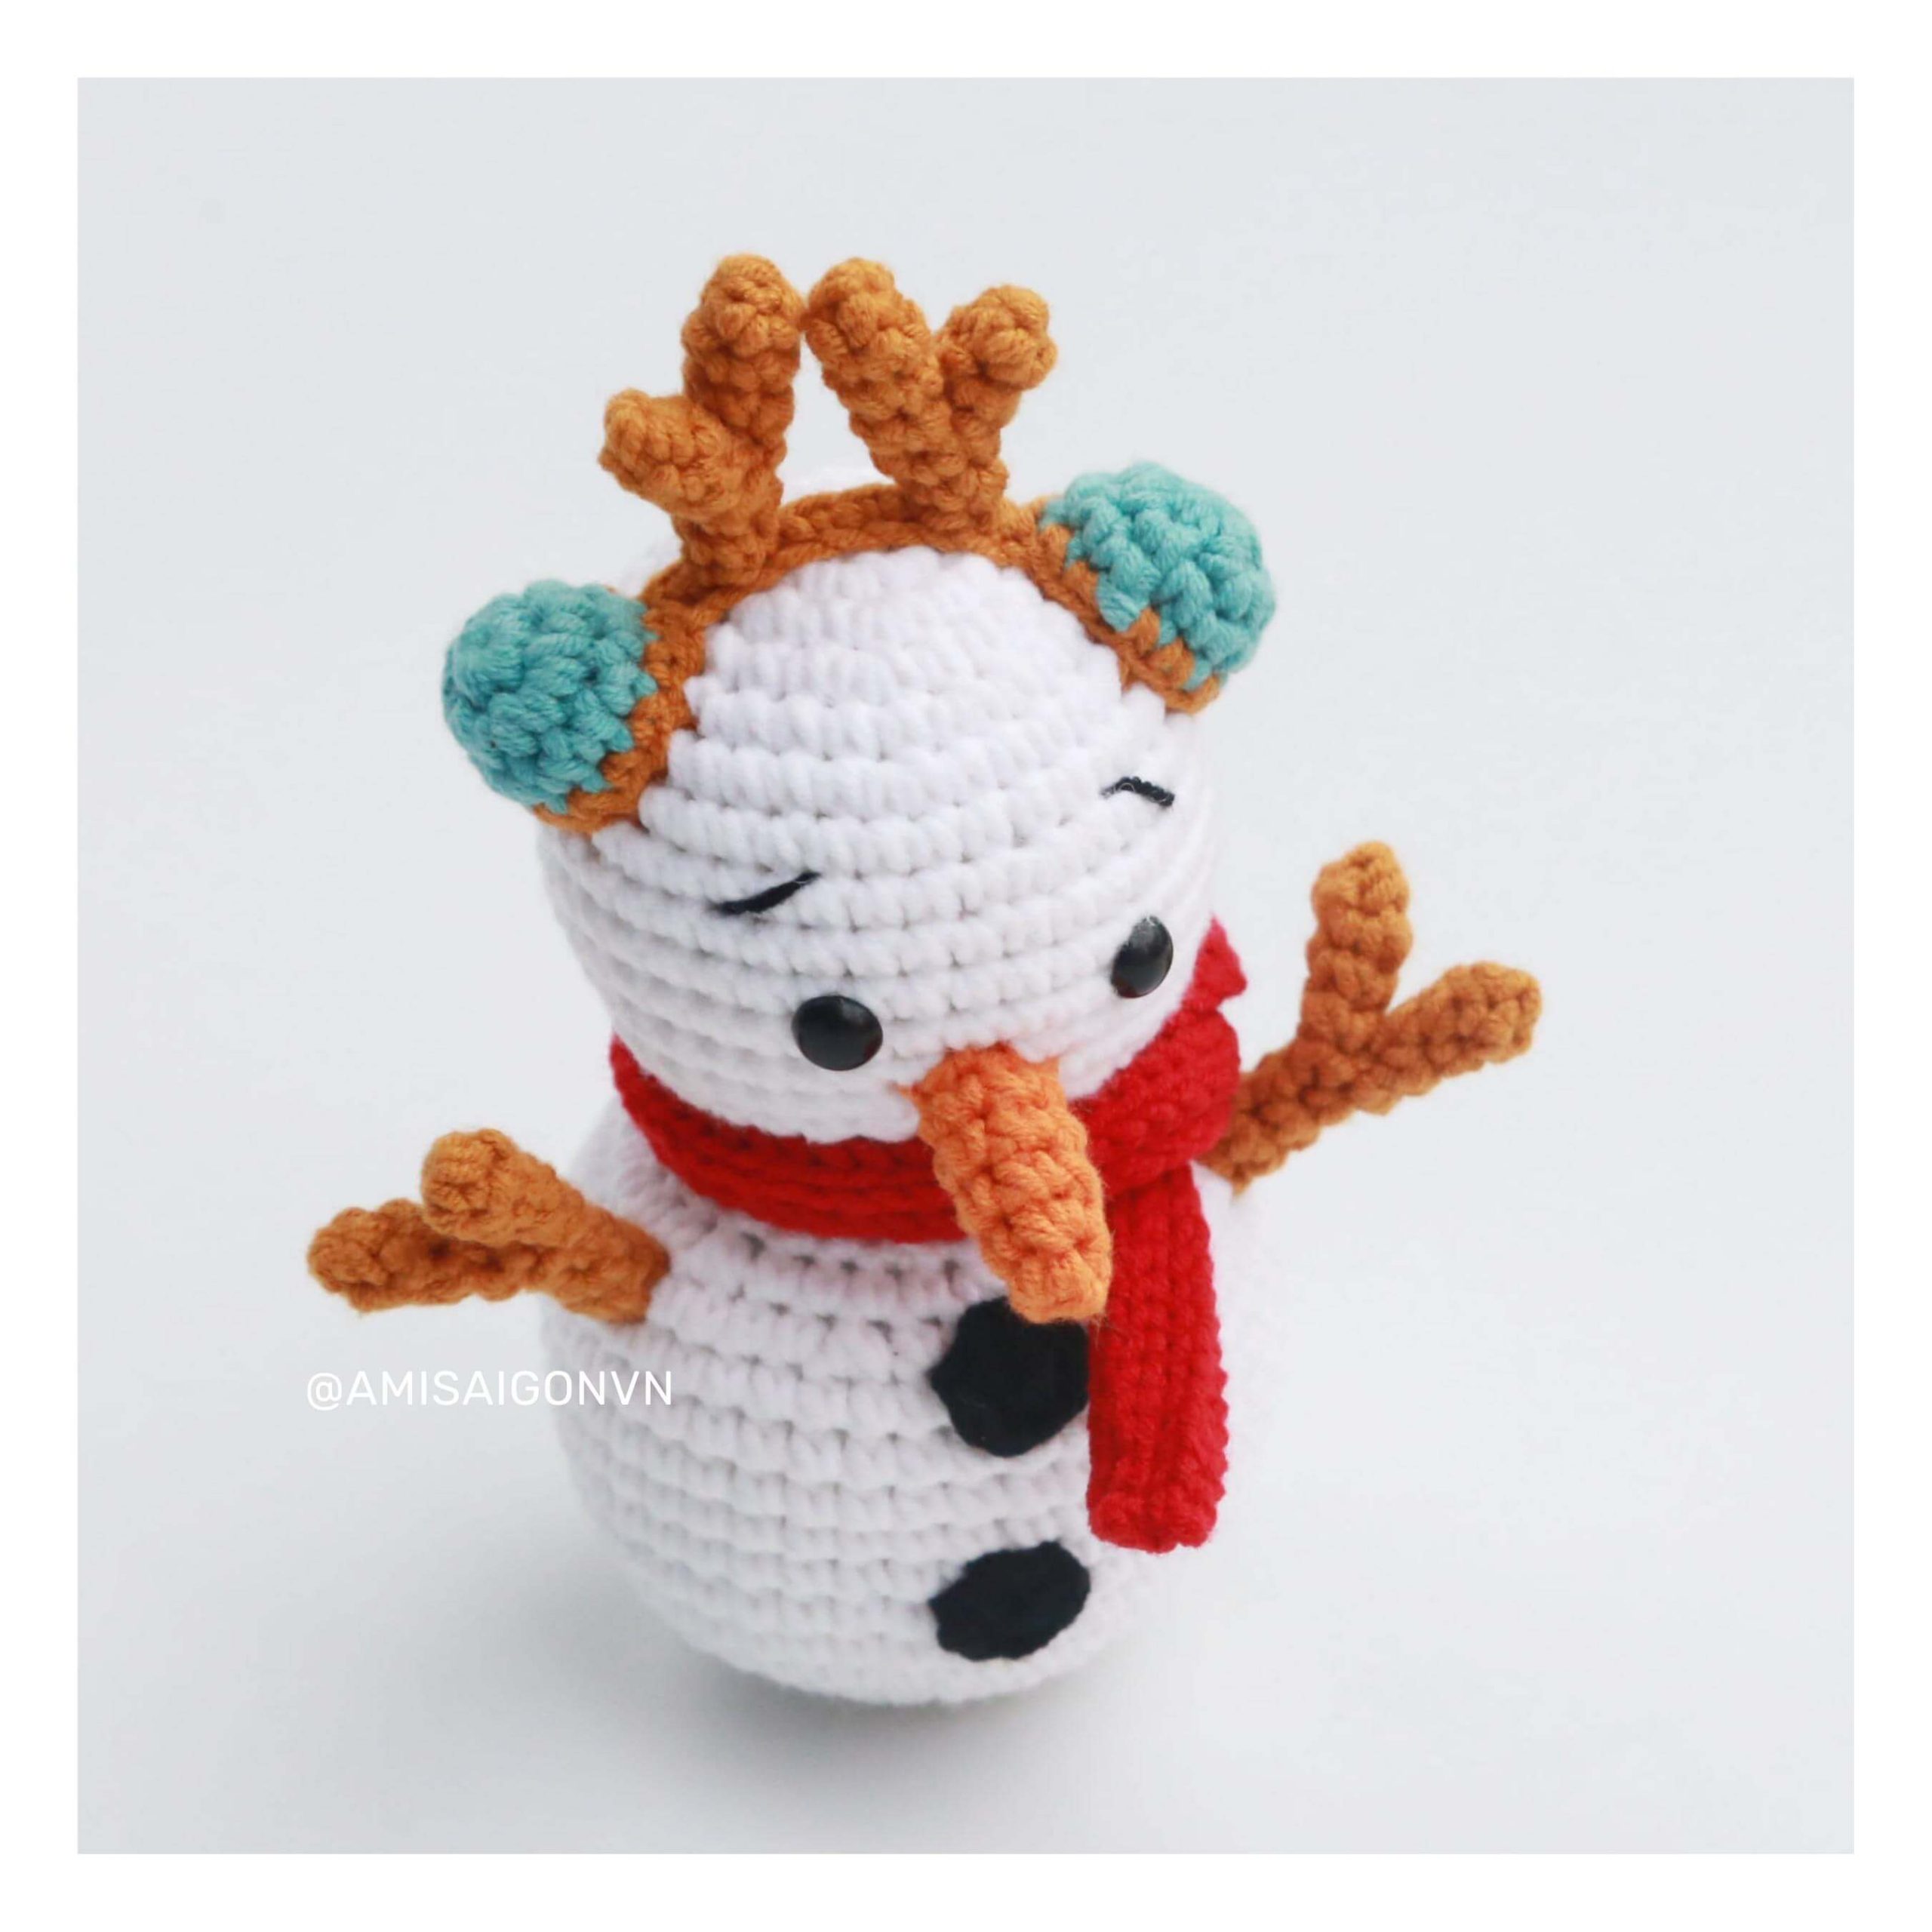 snowman-amigurumi-crochet-pattern-amisaigon (11)